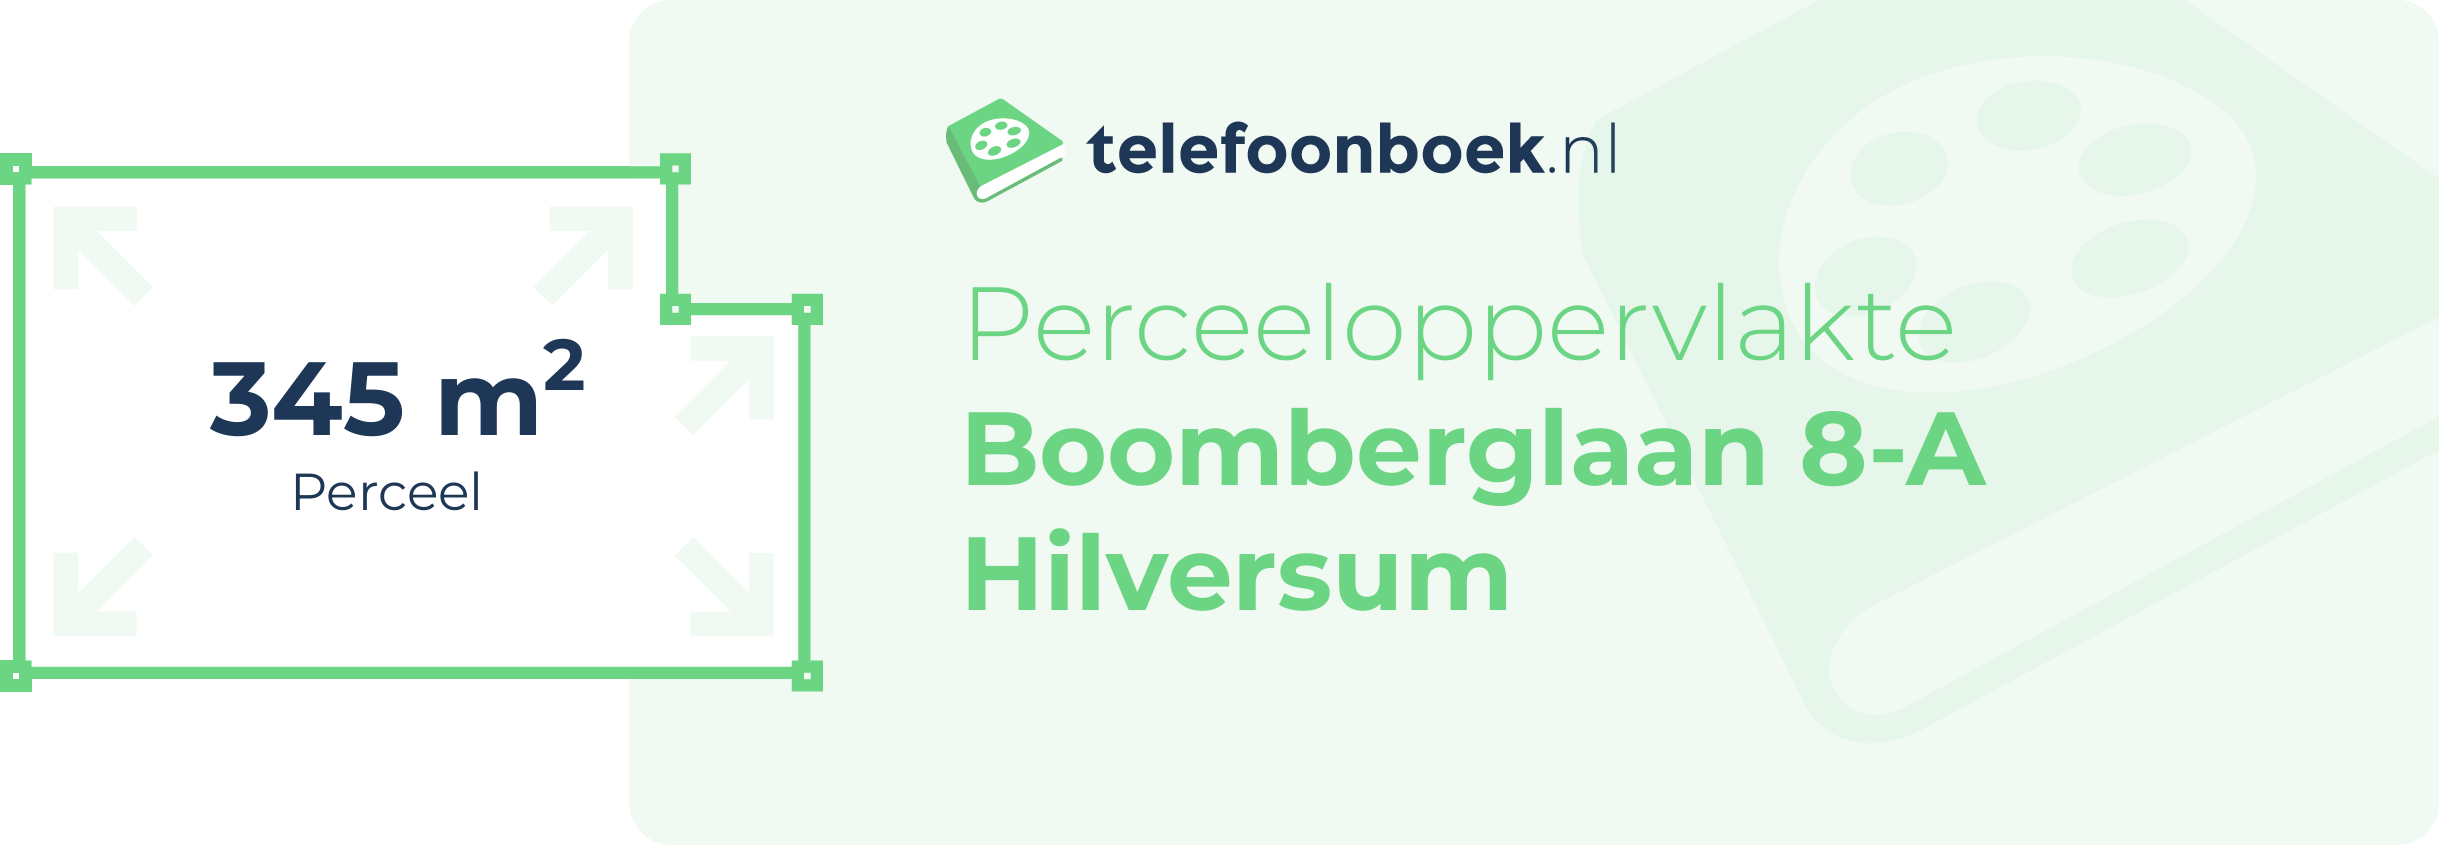 Perceeloppervlakte Boomberglaan 8-A Hilversum